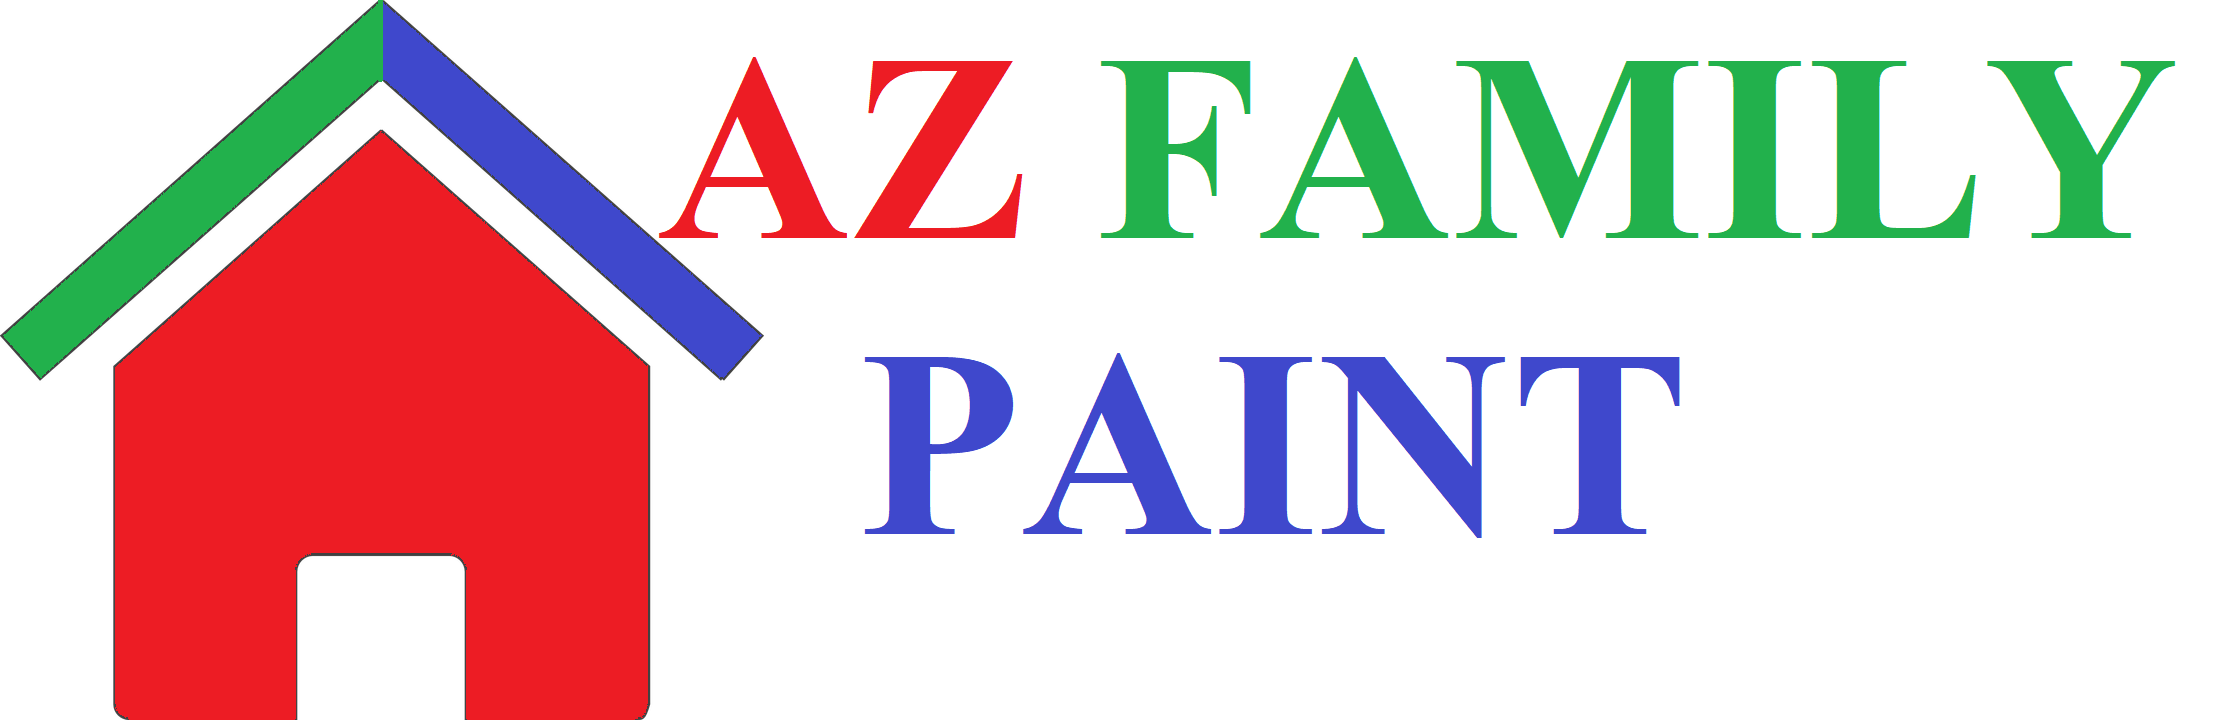 AZ Family Paint